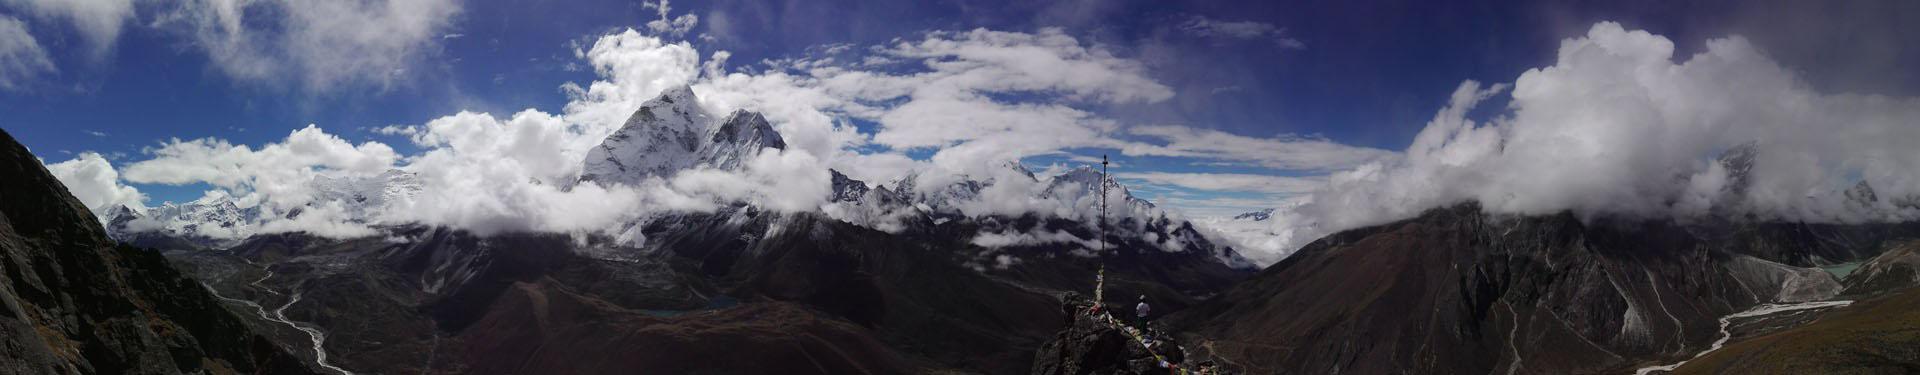 Rock Climbing in Kathmandu | Rock Climbing in Nepal